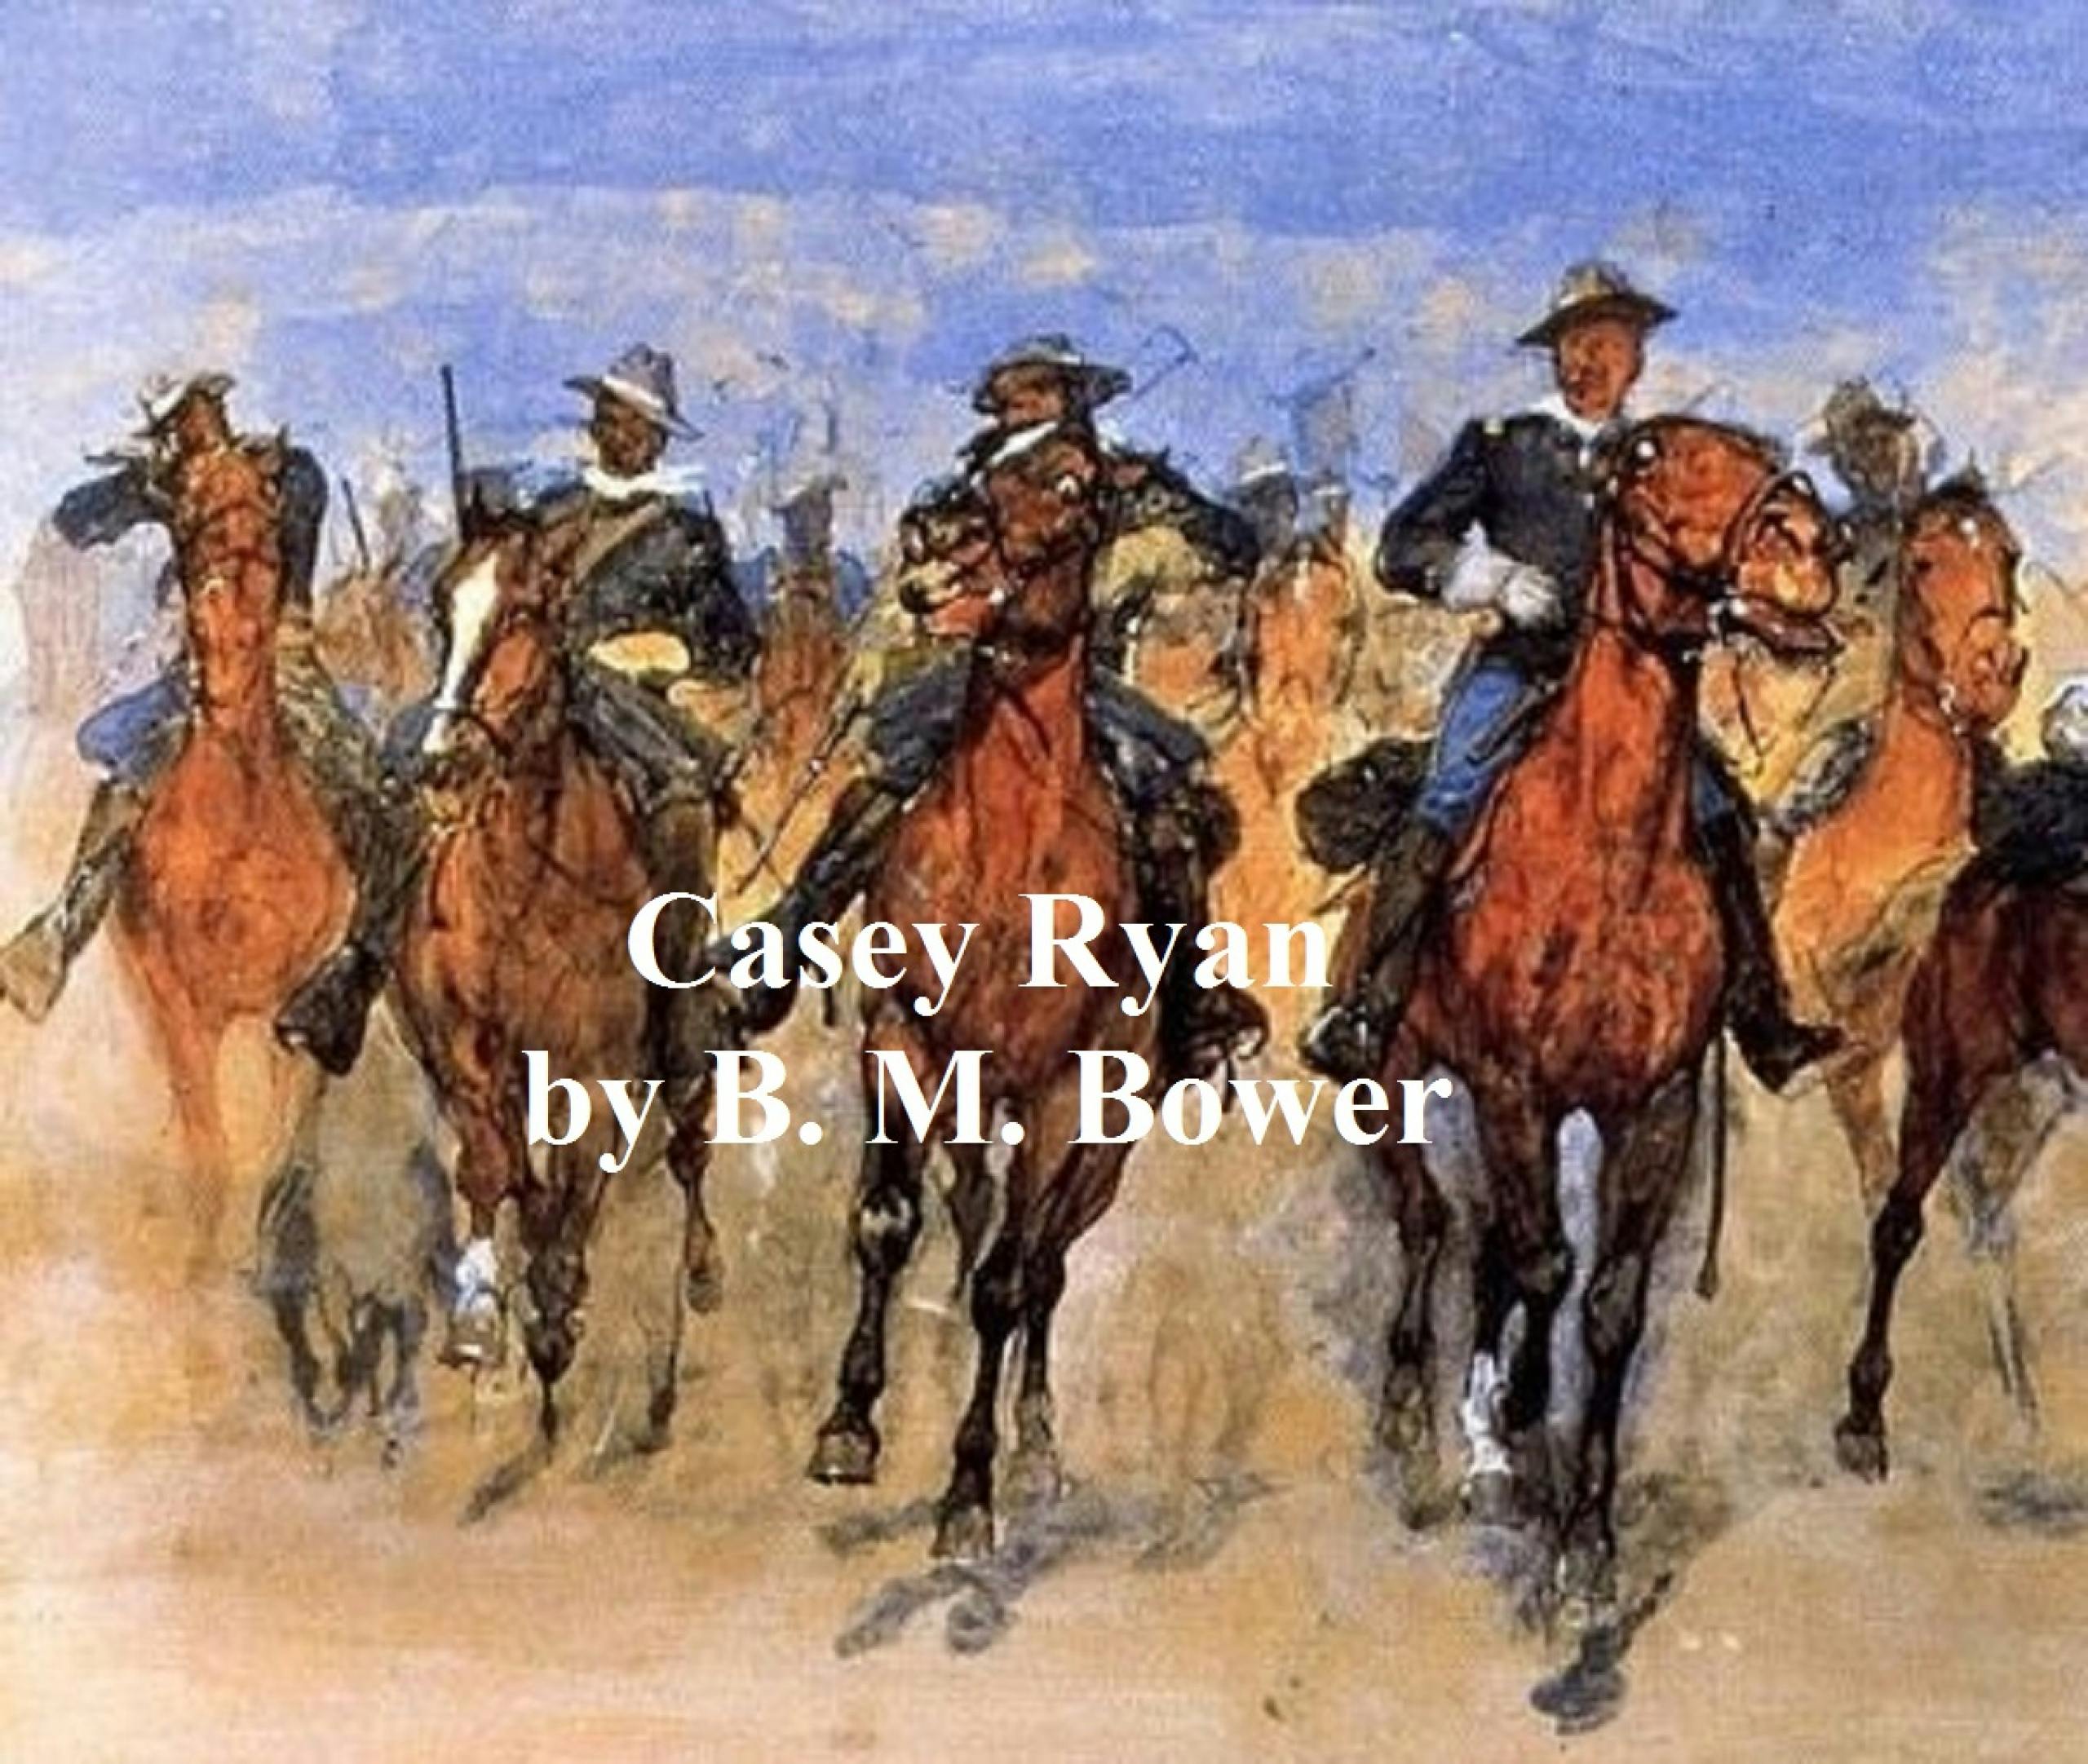 Casey Ryan - B. M. Bower